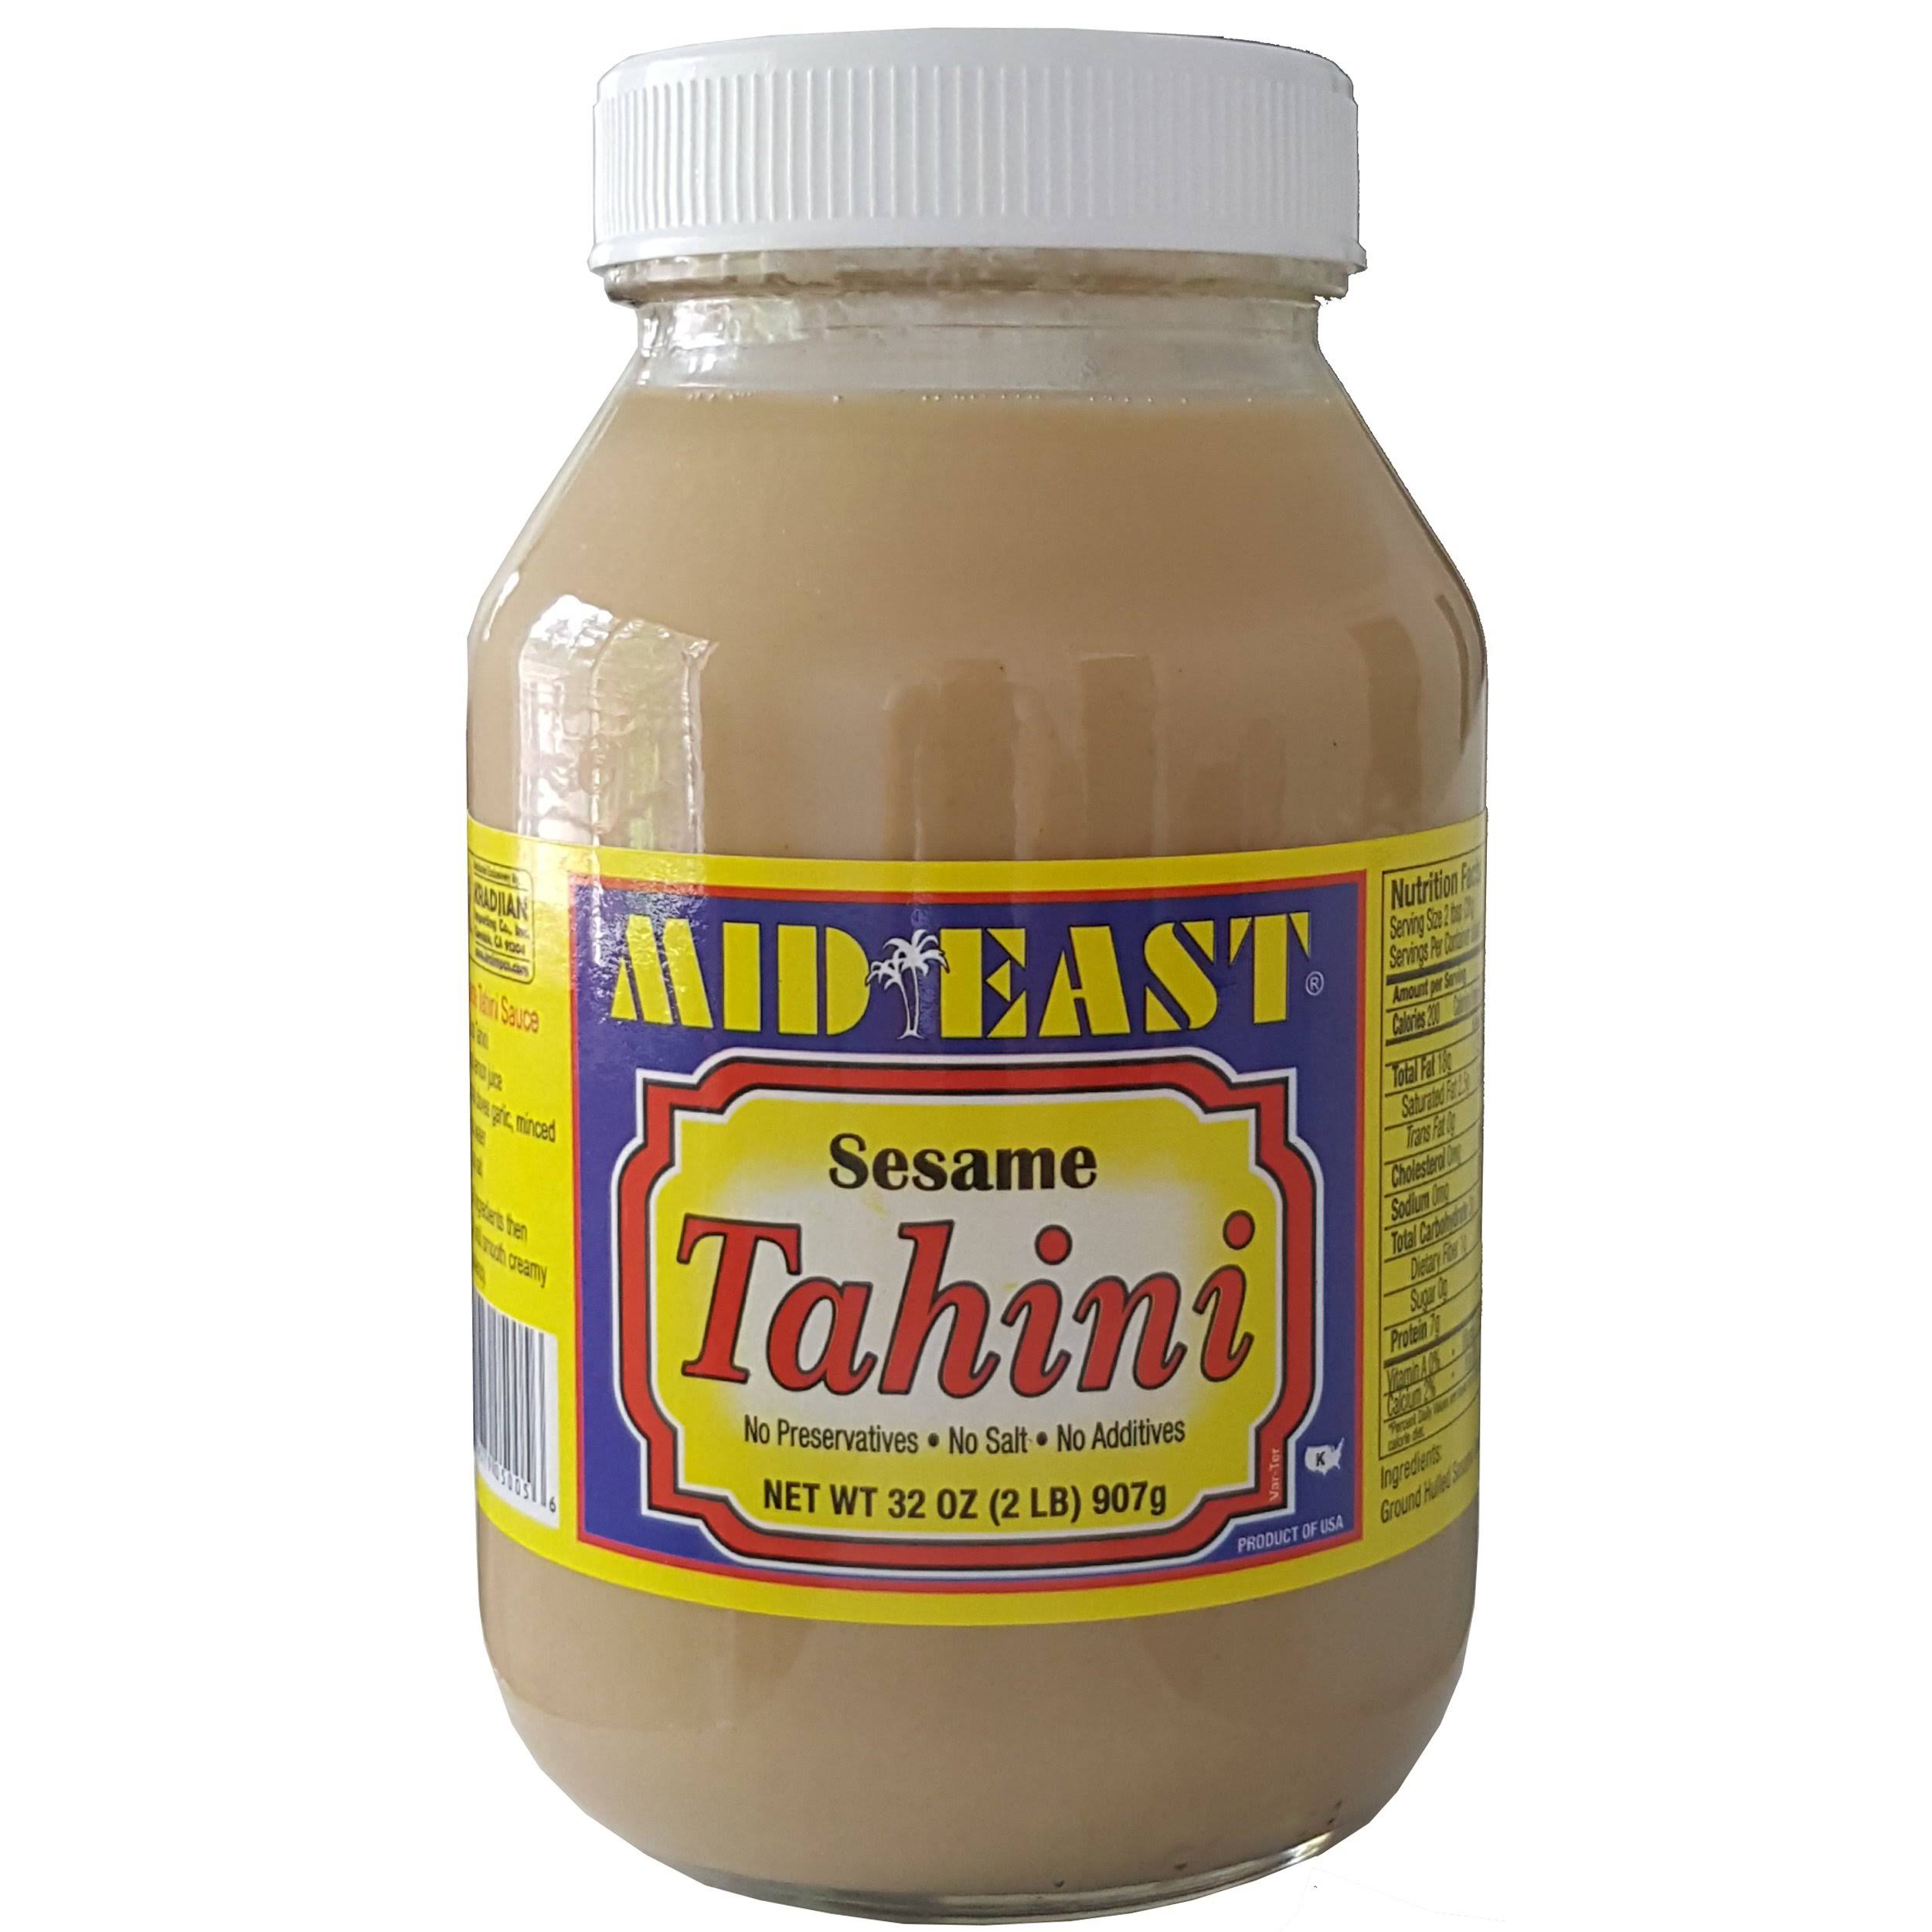 Mid East Sesame Spread Tahini Plastic Jar 32 oz